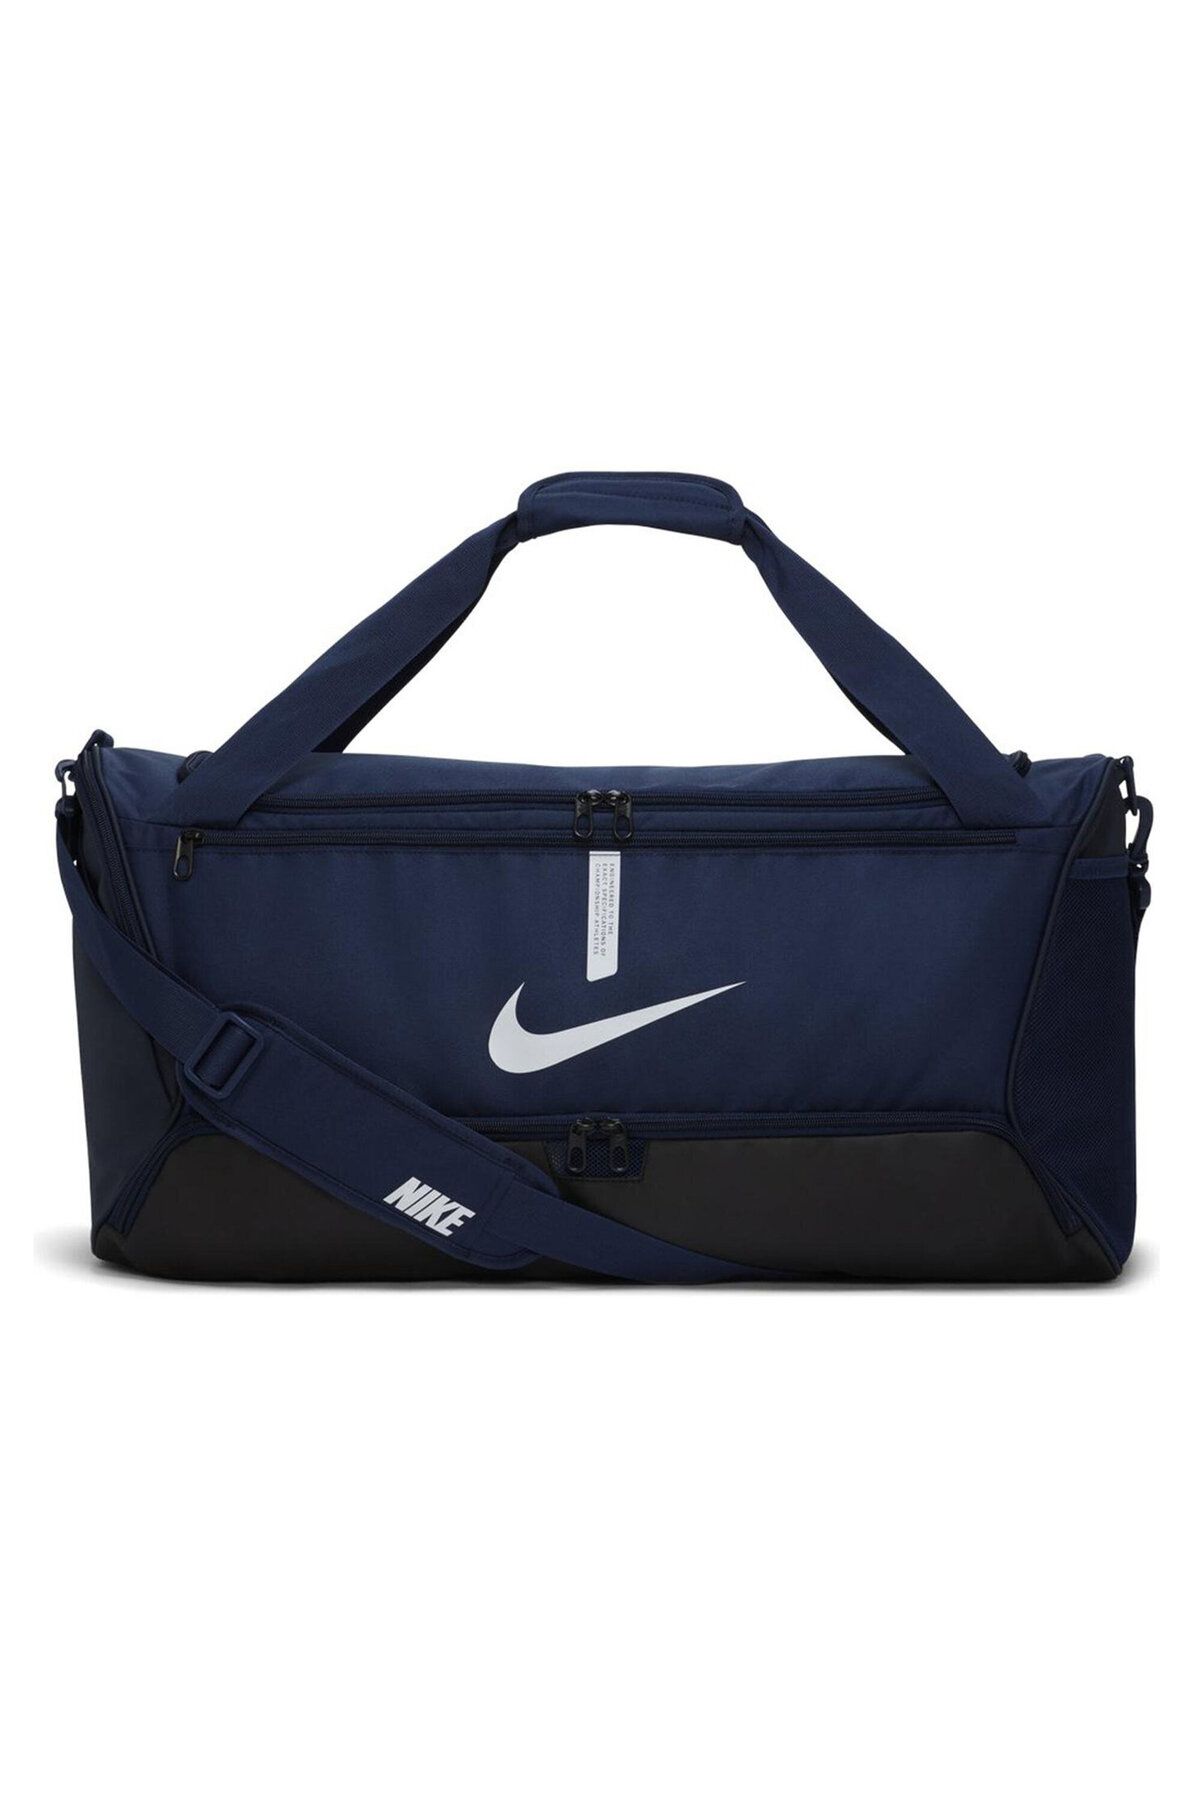 Nike Academy Team M Duffel Bag